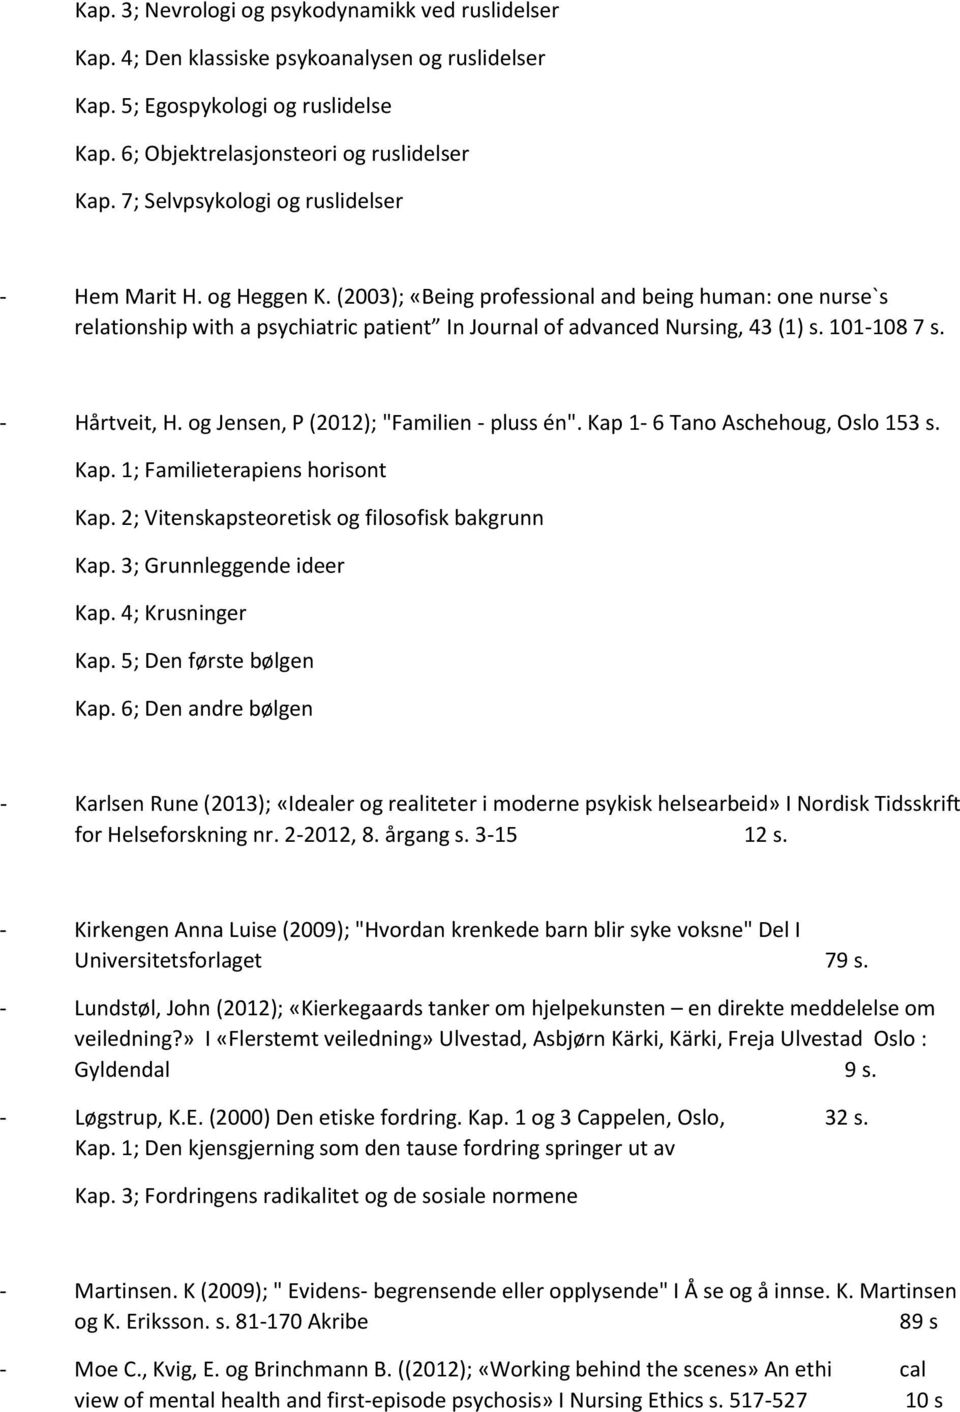 101-108 7 s. - Hårtveit, H. og Jensen, P (2012); "Familien - pluss én". Kap 1-6 Tano Aschehoug, Oslo 153 s. Kap. 1; Familieterapiens horisont Kap. 2; Vitenskapsteoretisk og filosofisk bakgrunn Kap.